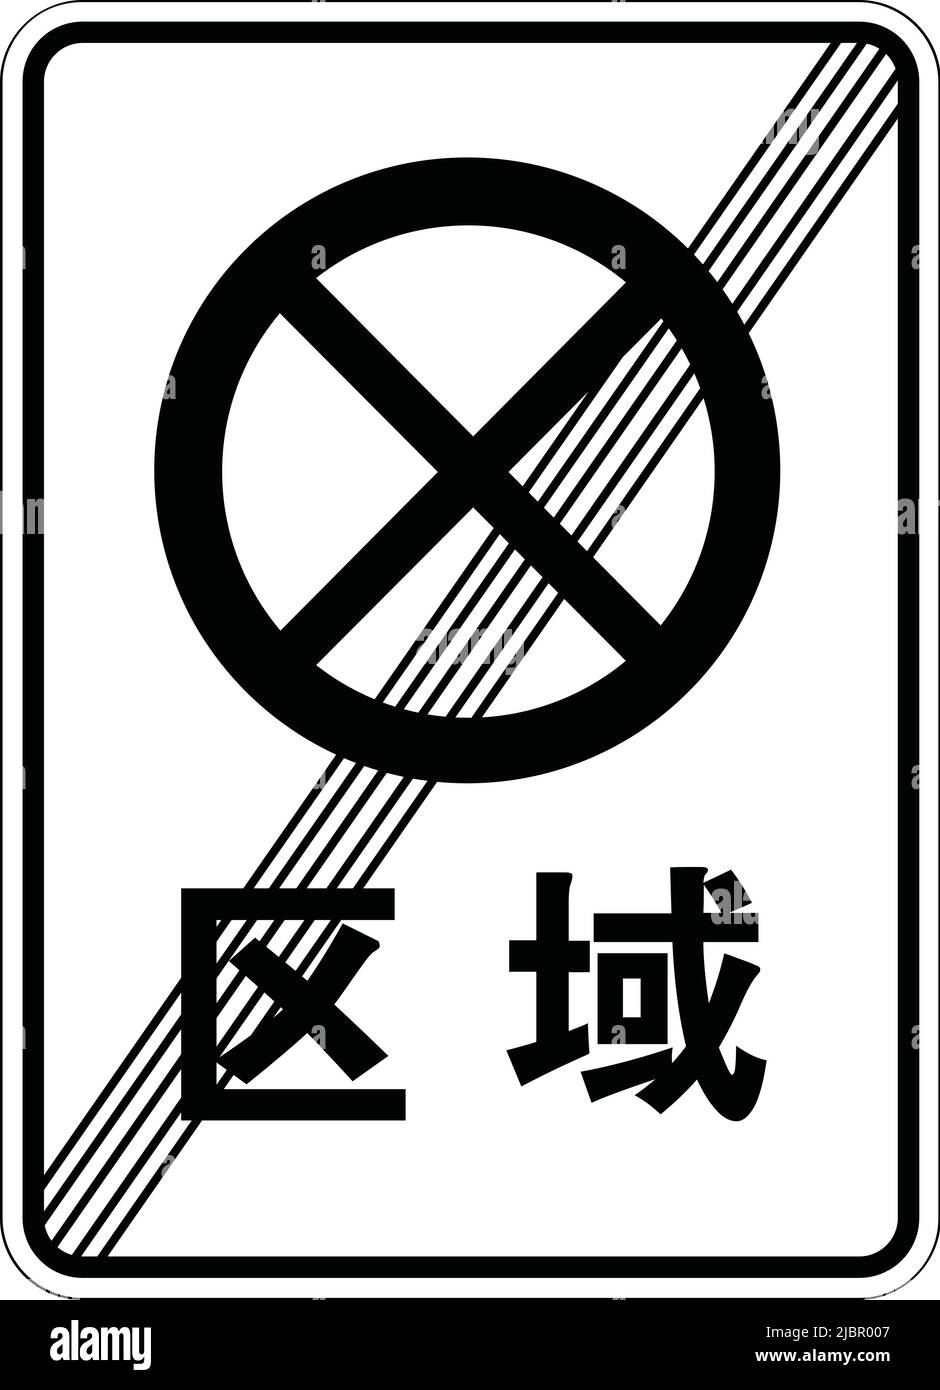 Panneaux d'interdiction, panneaux de signalisation routière en Chine, Une grande variété de panneaux de signalisation routière sont exposés en République populaire de Chine. Fin de la zone sans arrêt Illustration de Vecteur